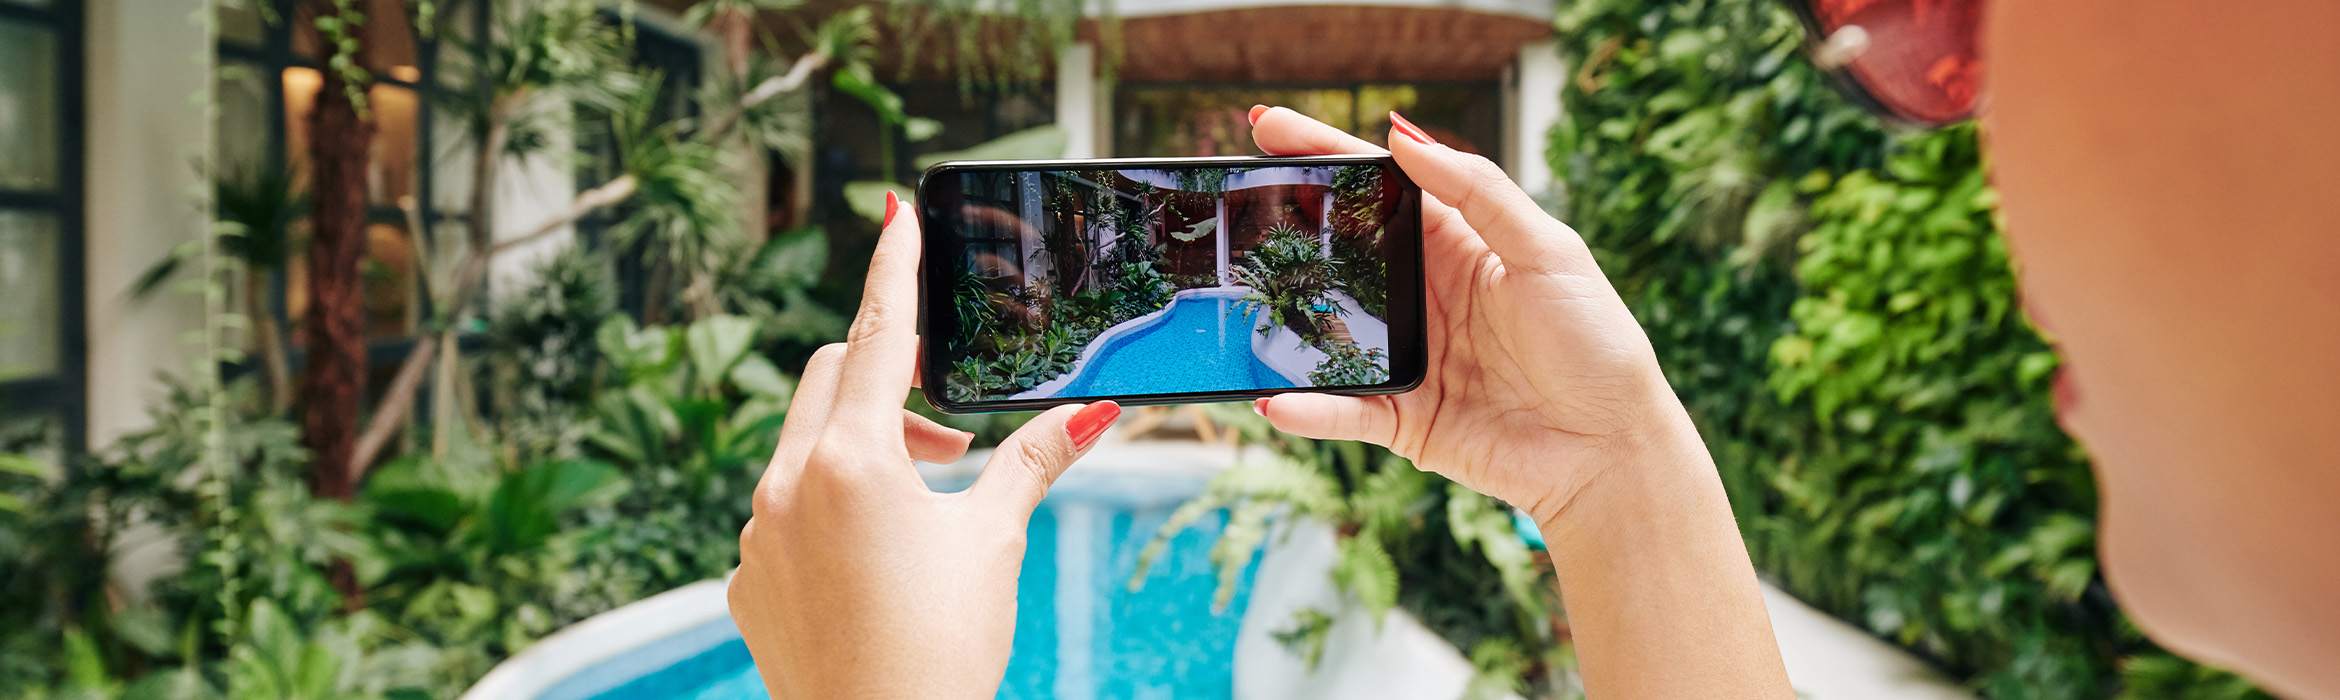 Smartphone met camera gericht op tropisch zwembad om content voor social media te maken